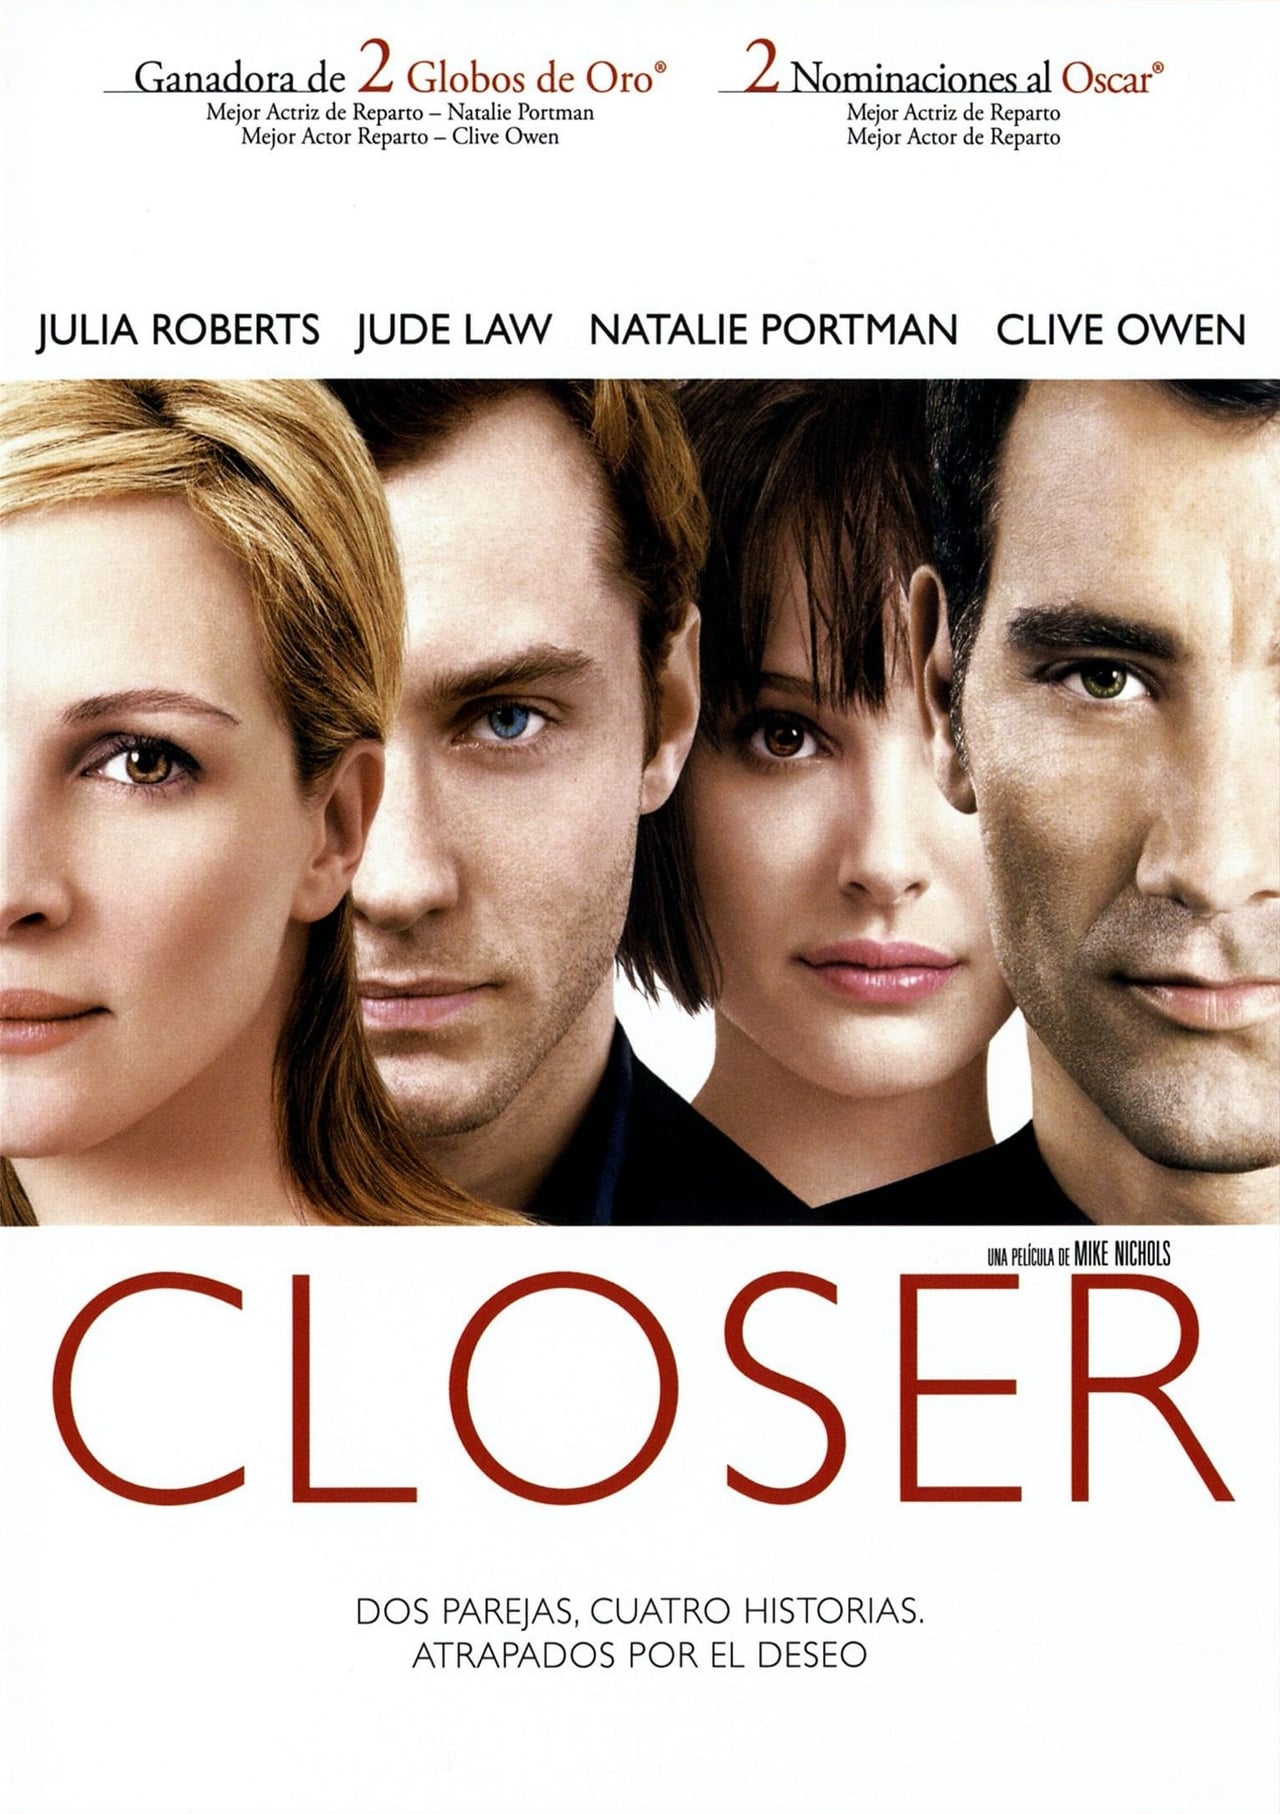 Closer. Близость / closer (2004). Натали Портман и Джуд Лоу. Closer poster.